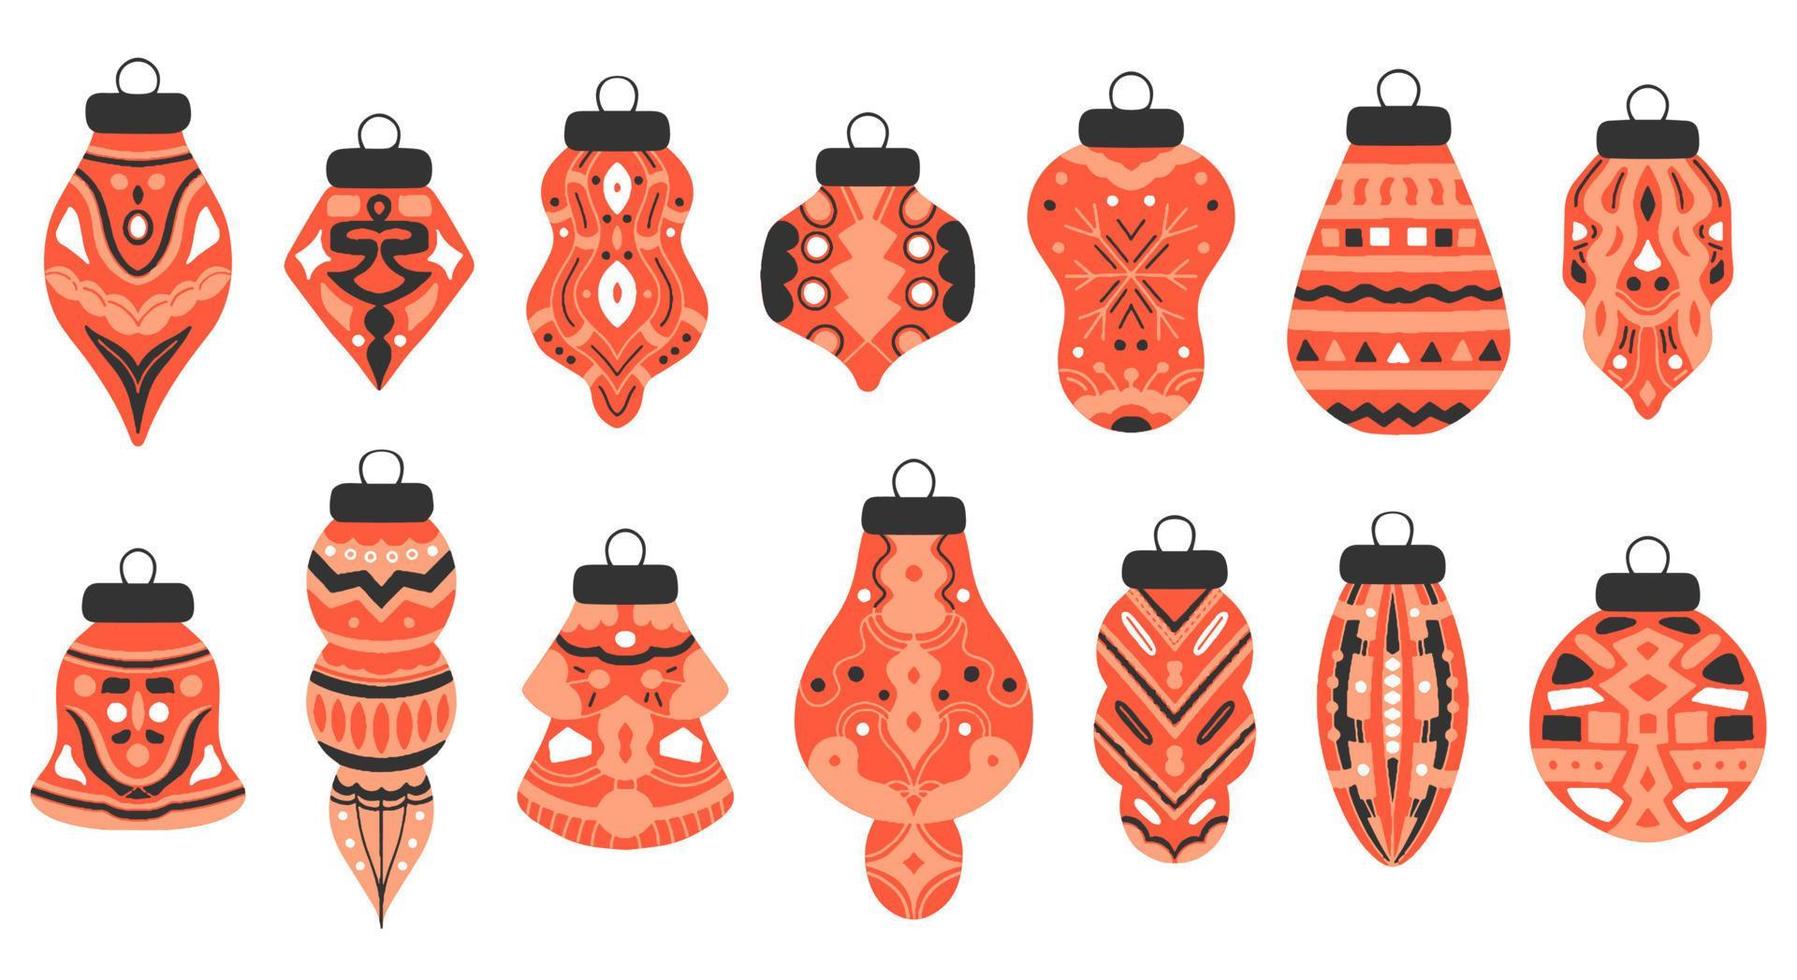 ano novo conjunto bolas de árvore de natal em estilo desenhado à mão com ornamento. ícones isolados, adesivos, elementos para o design de folhetos, cartões postais, cartazes, convites. vetor